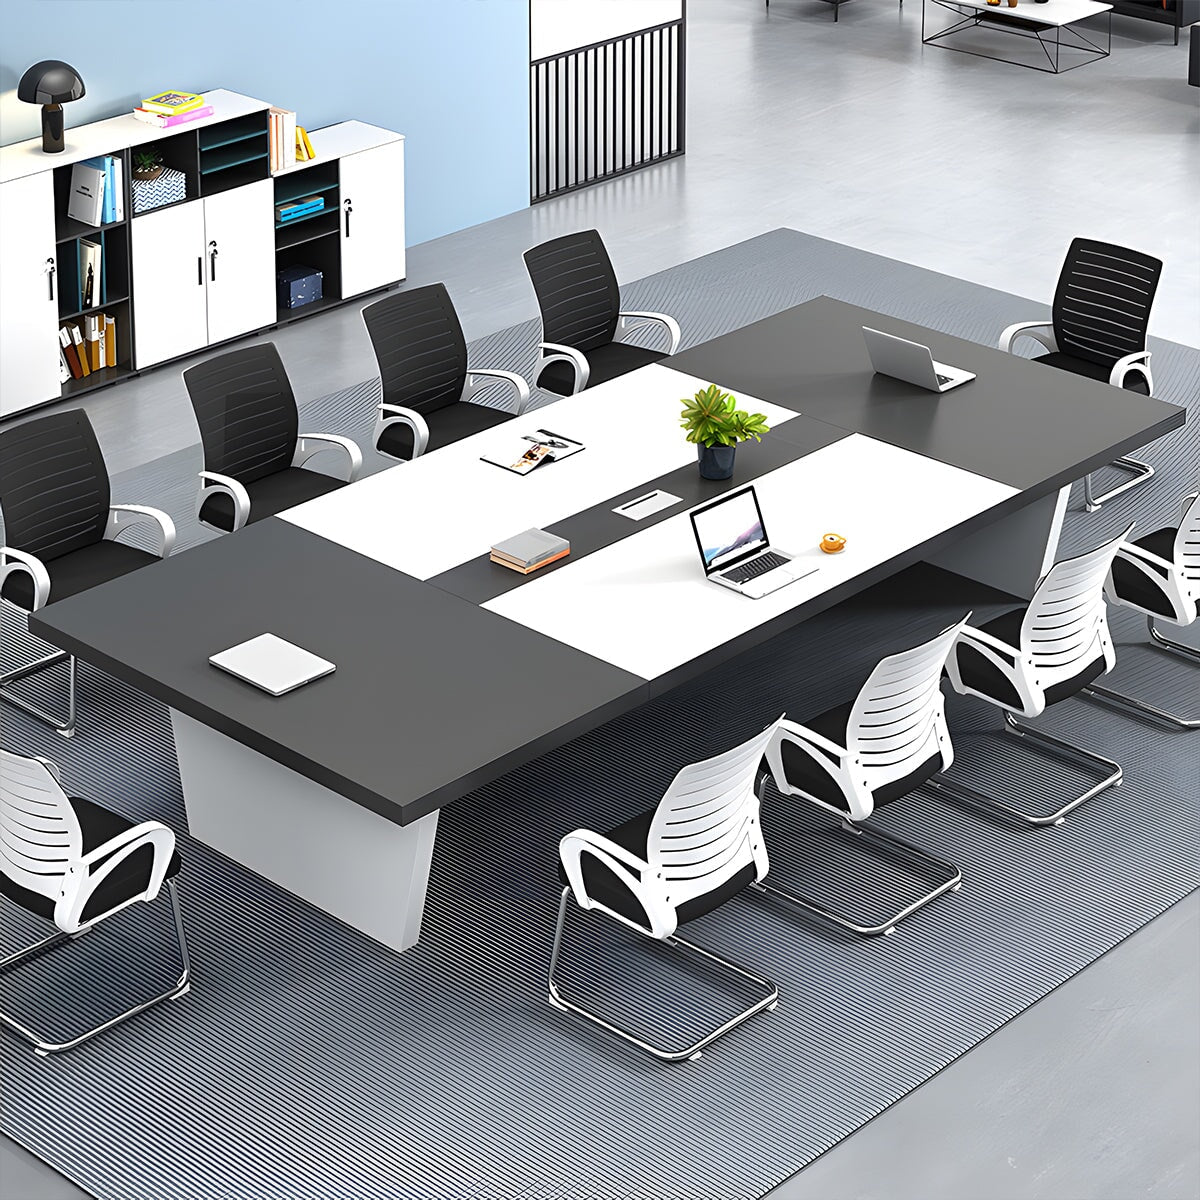 会議用テーブル 会議用デスク ミーティングテーブル大型 オフィスデスク　metamall